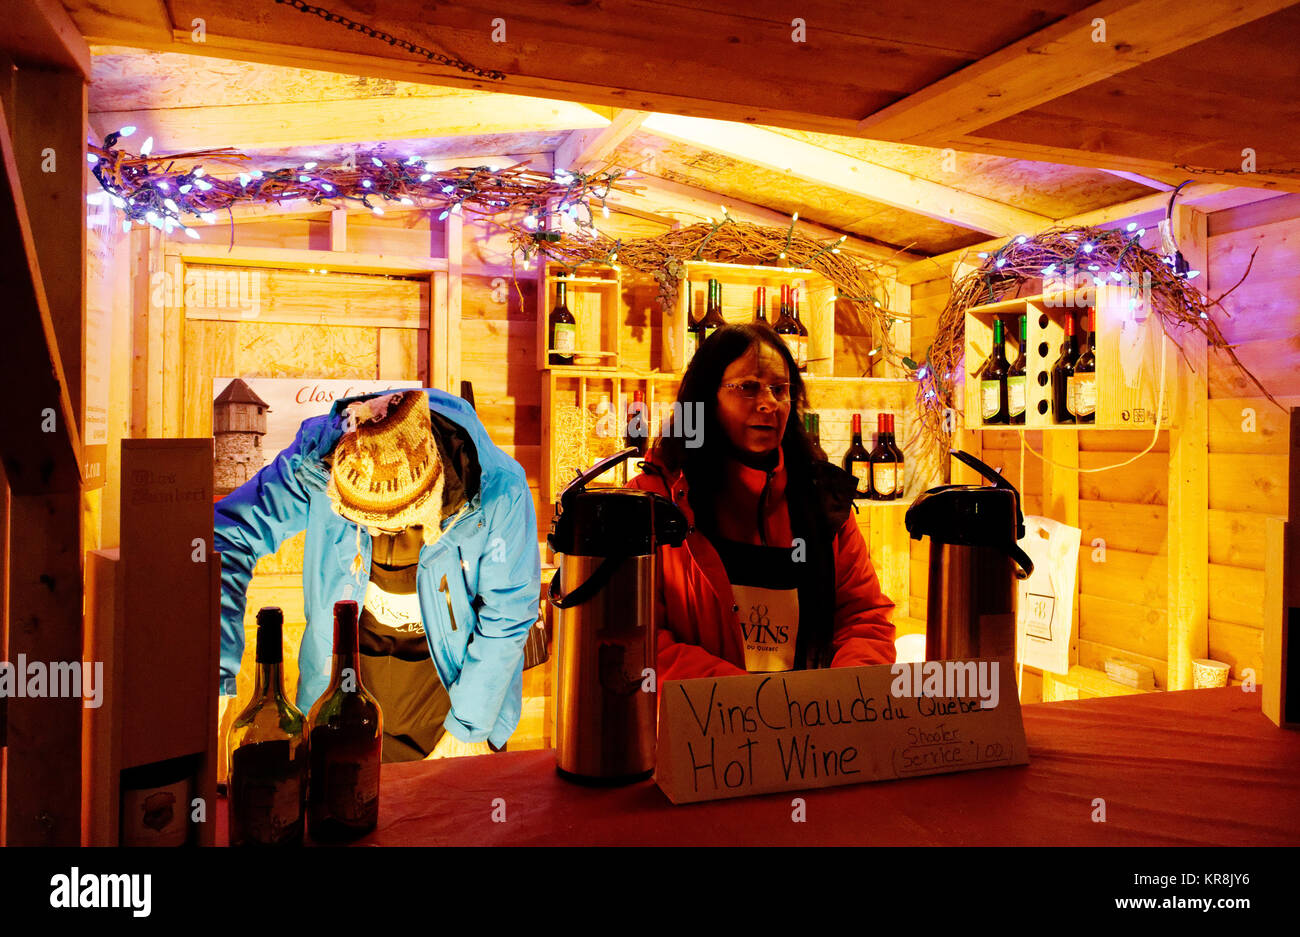 Un kiosque dans le marché de Noël allemand de Québec vente de vin chaud (Gluwein) Banque D'Images